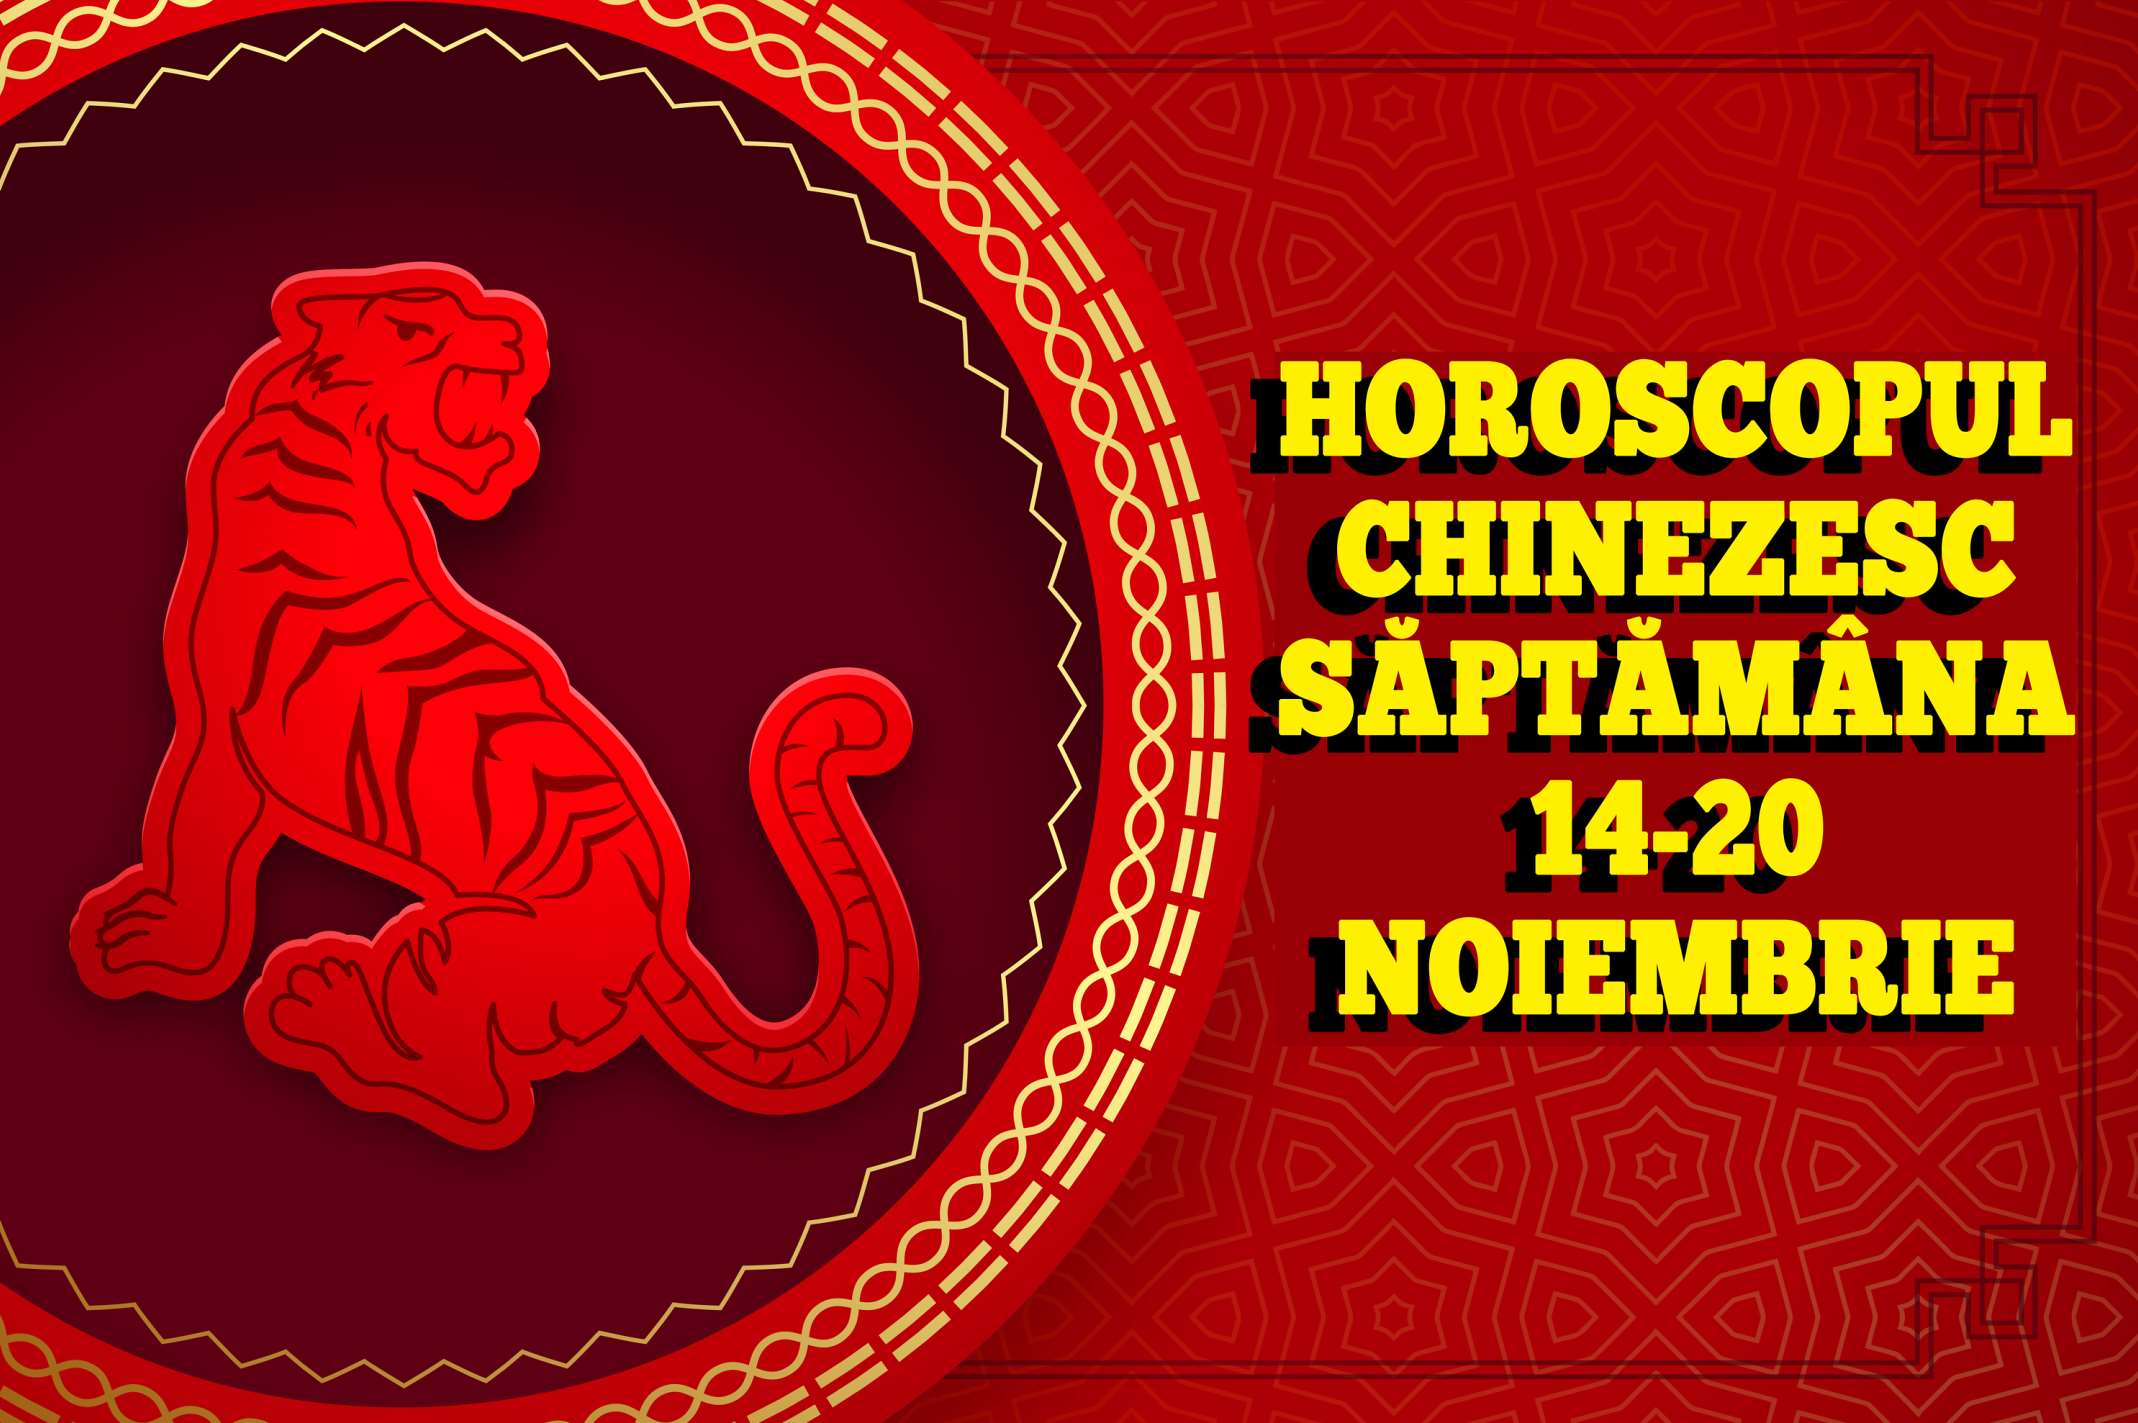 Horoscopul chinezesc saptamana 14-20 noiembrie 2022